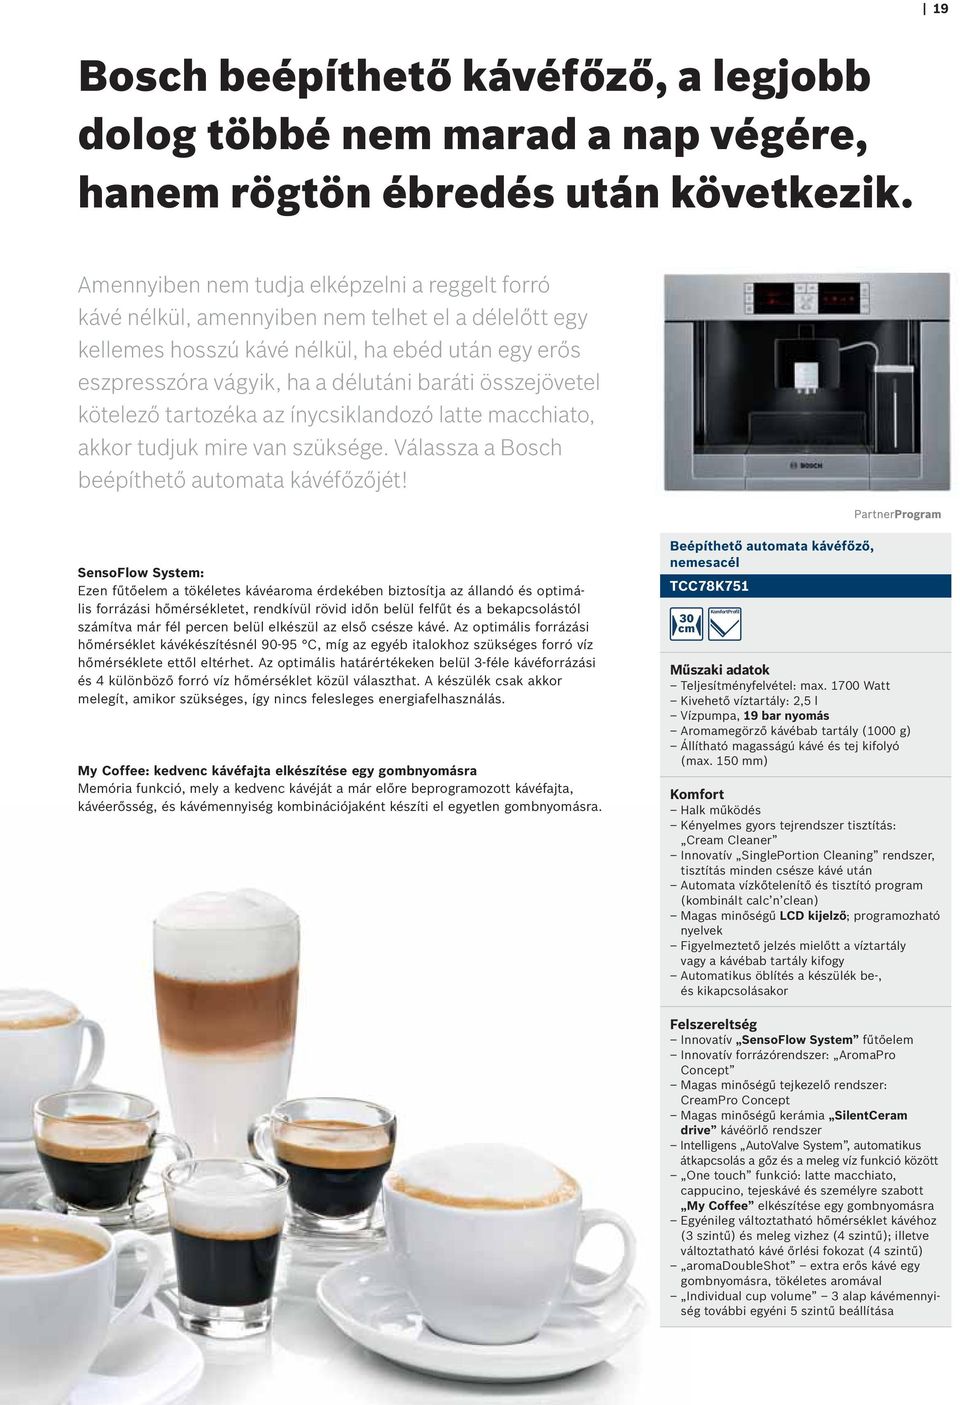 összejövetel kötelező tartozéka az ínycsiklandozó latte macchiato, akkor tudjuk mire van szüksége. Válassza a Bosch beépíthető automata kávéfőzőjét!